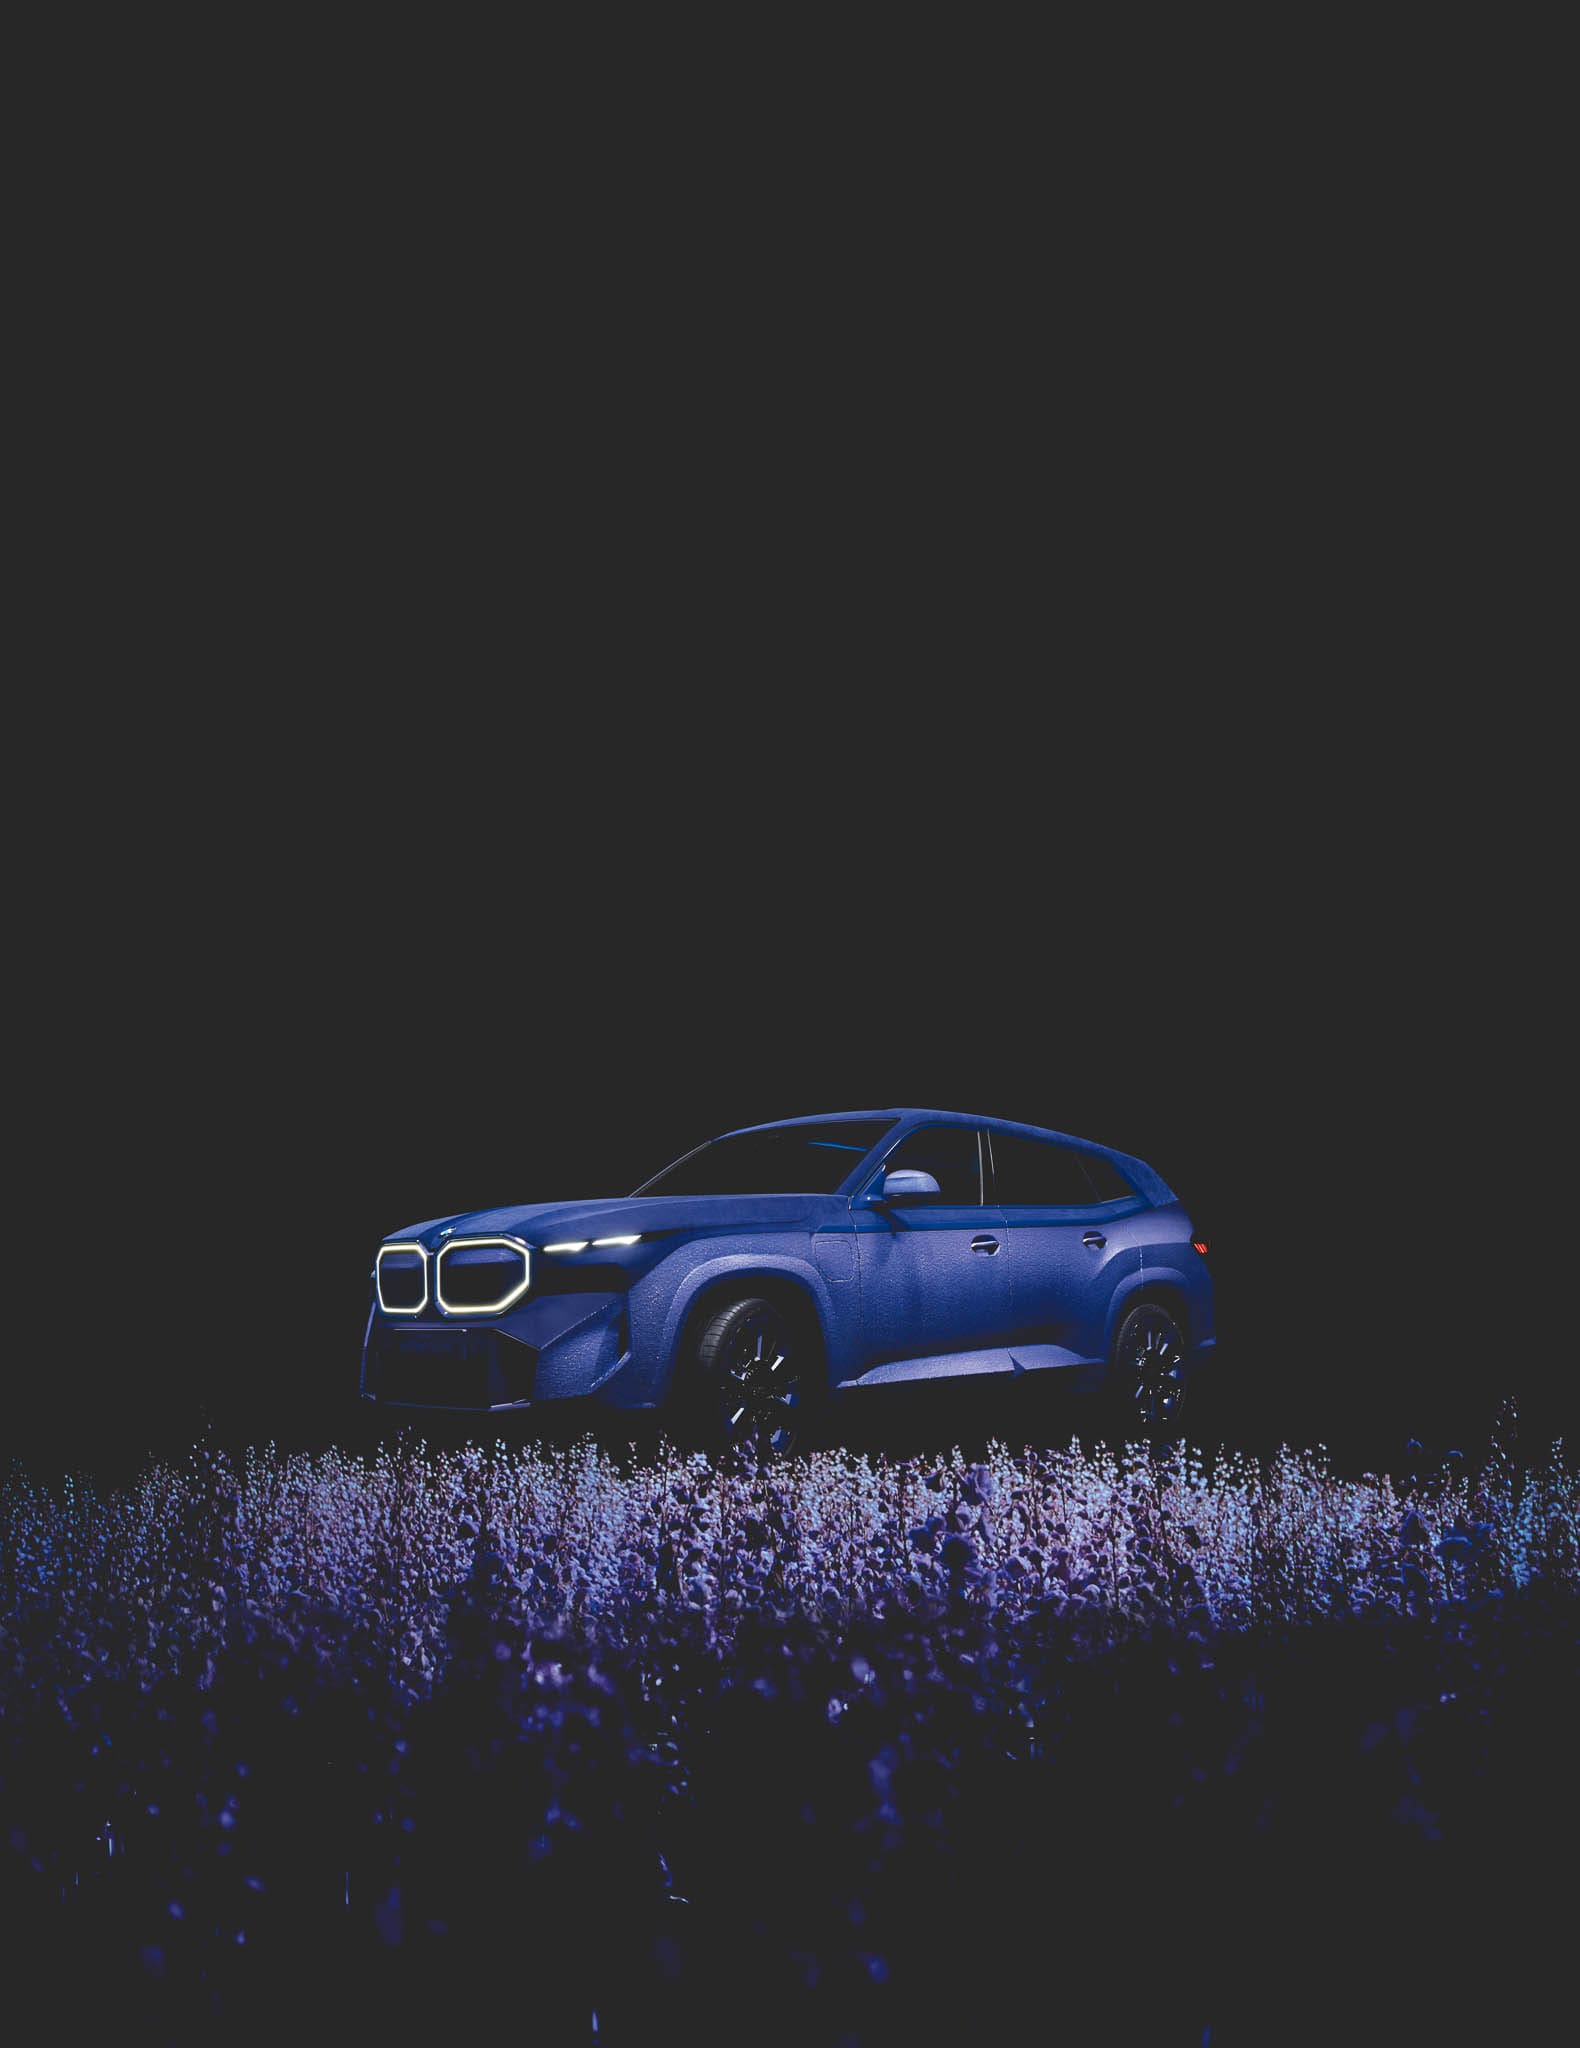 BMW XM Mystique Allure